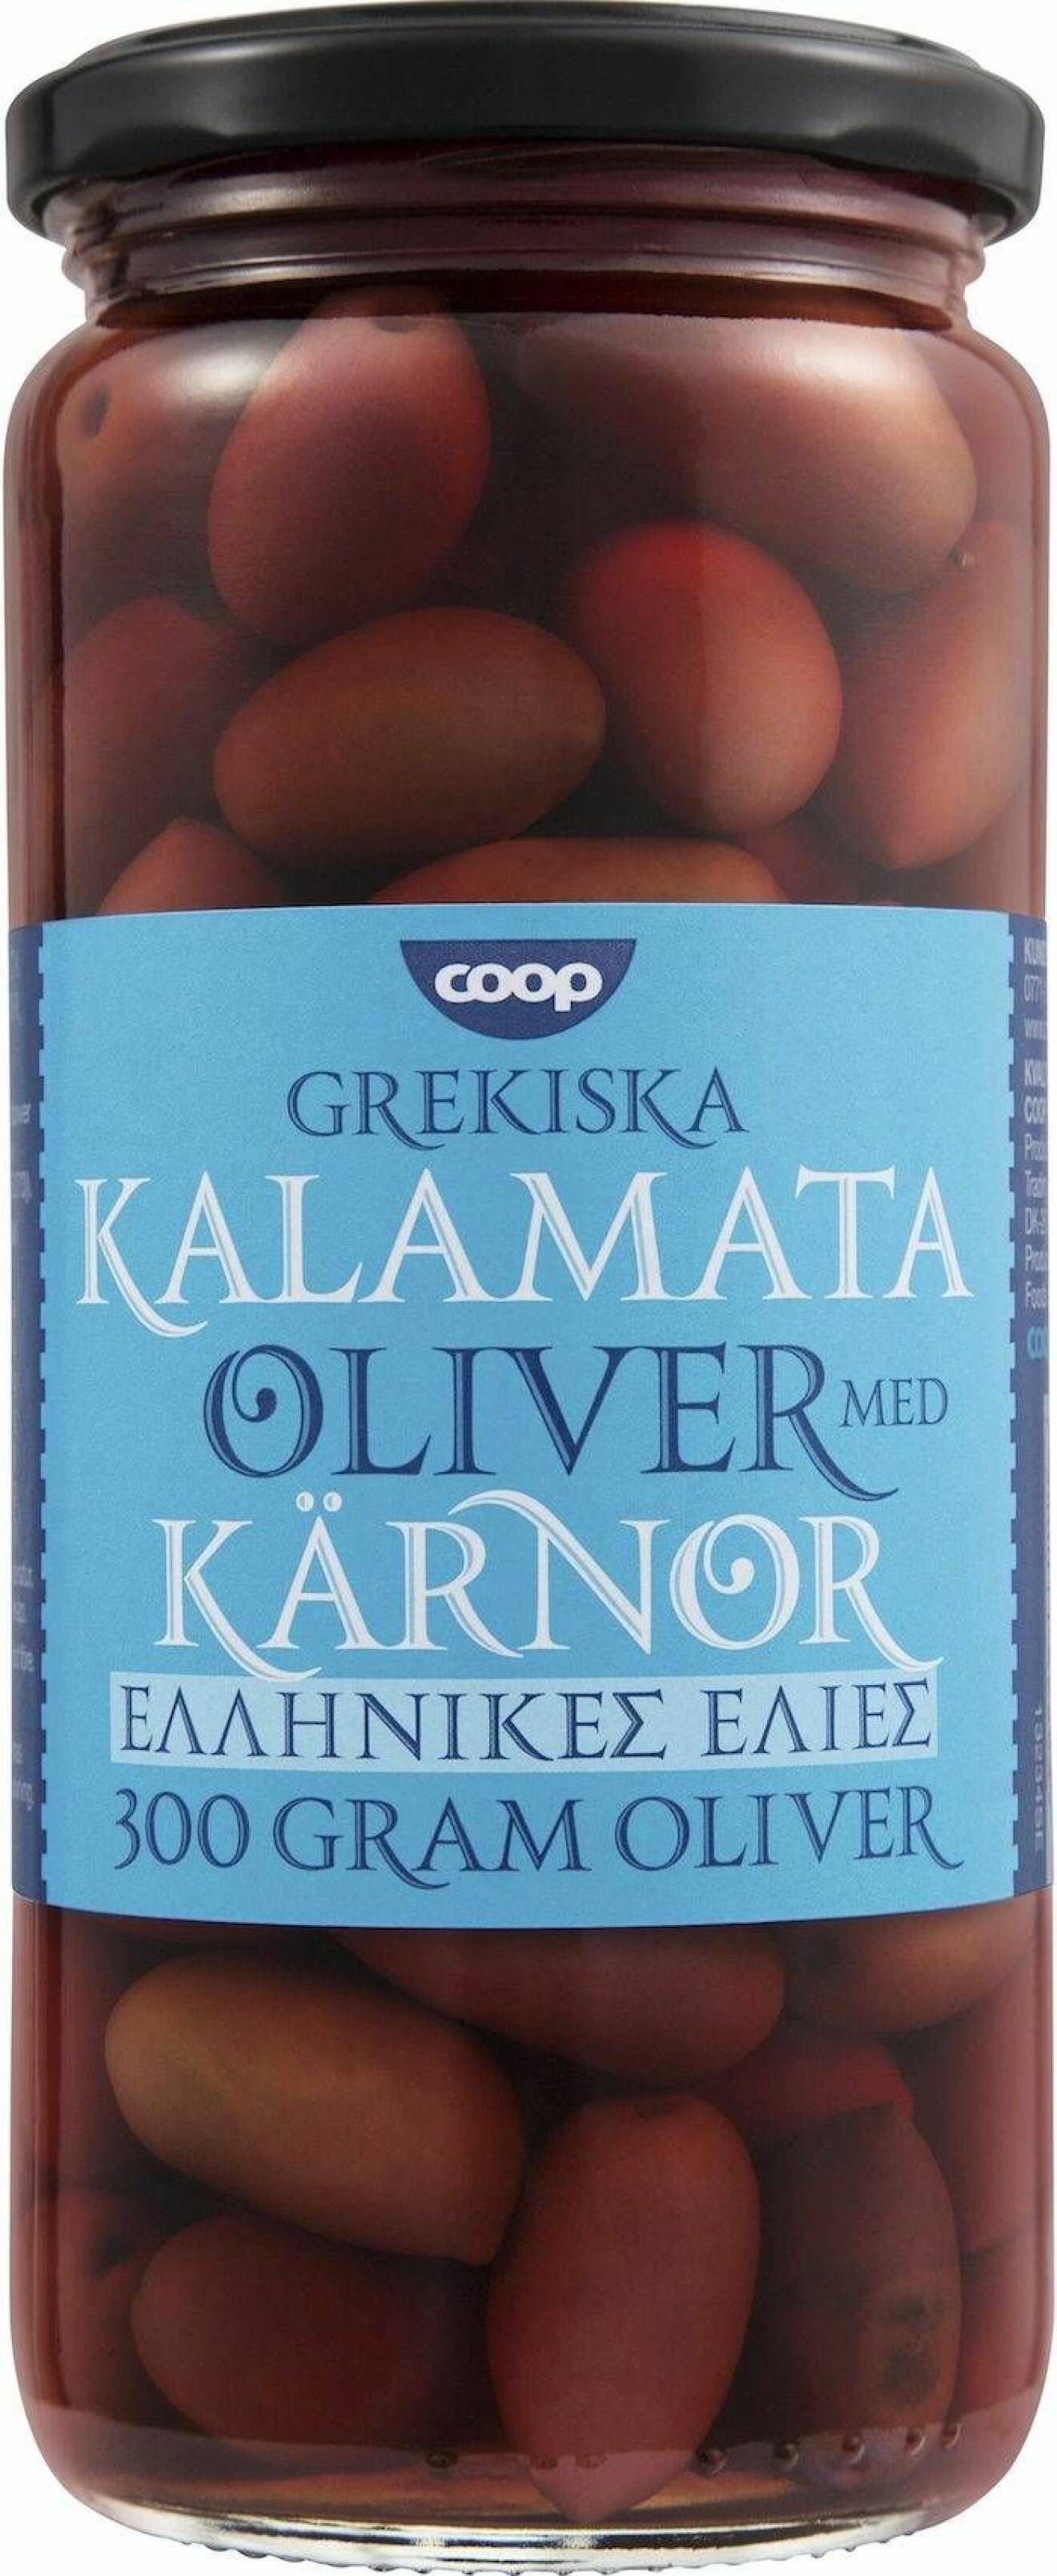 Coop grekiska oliver.